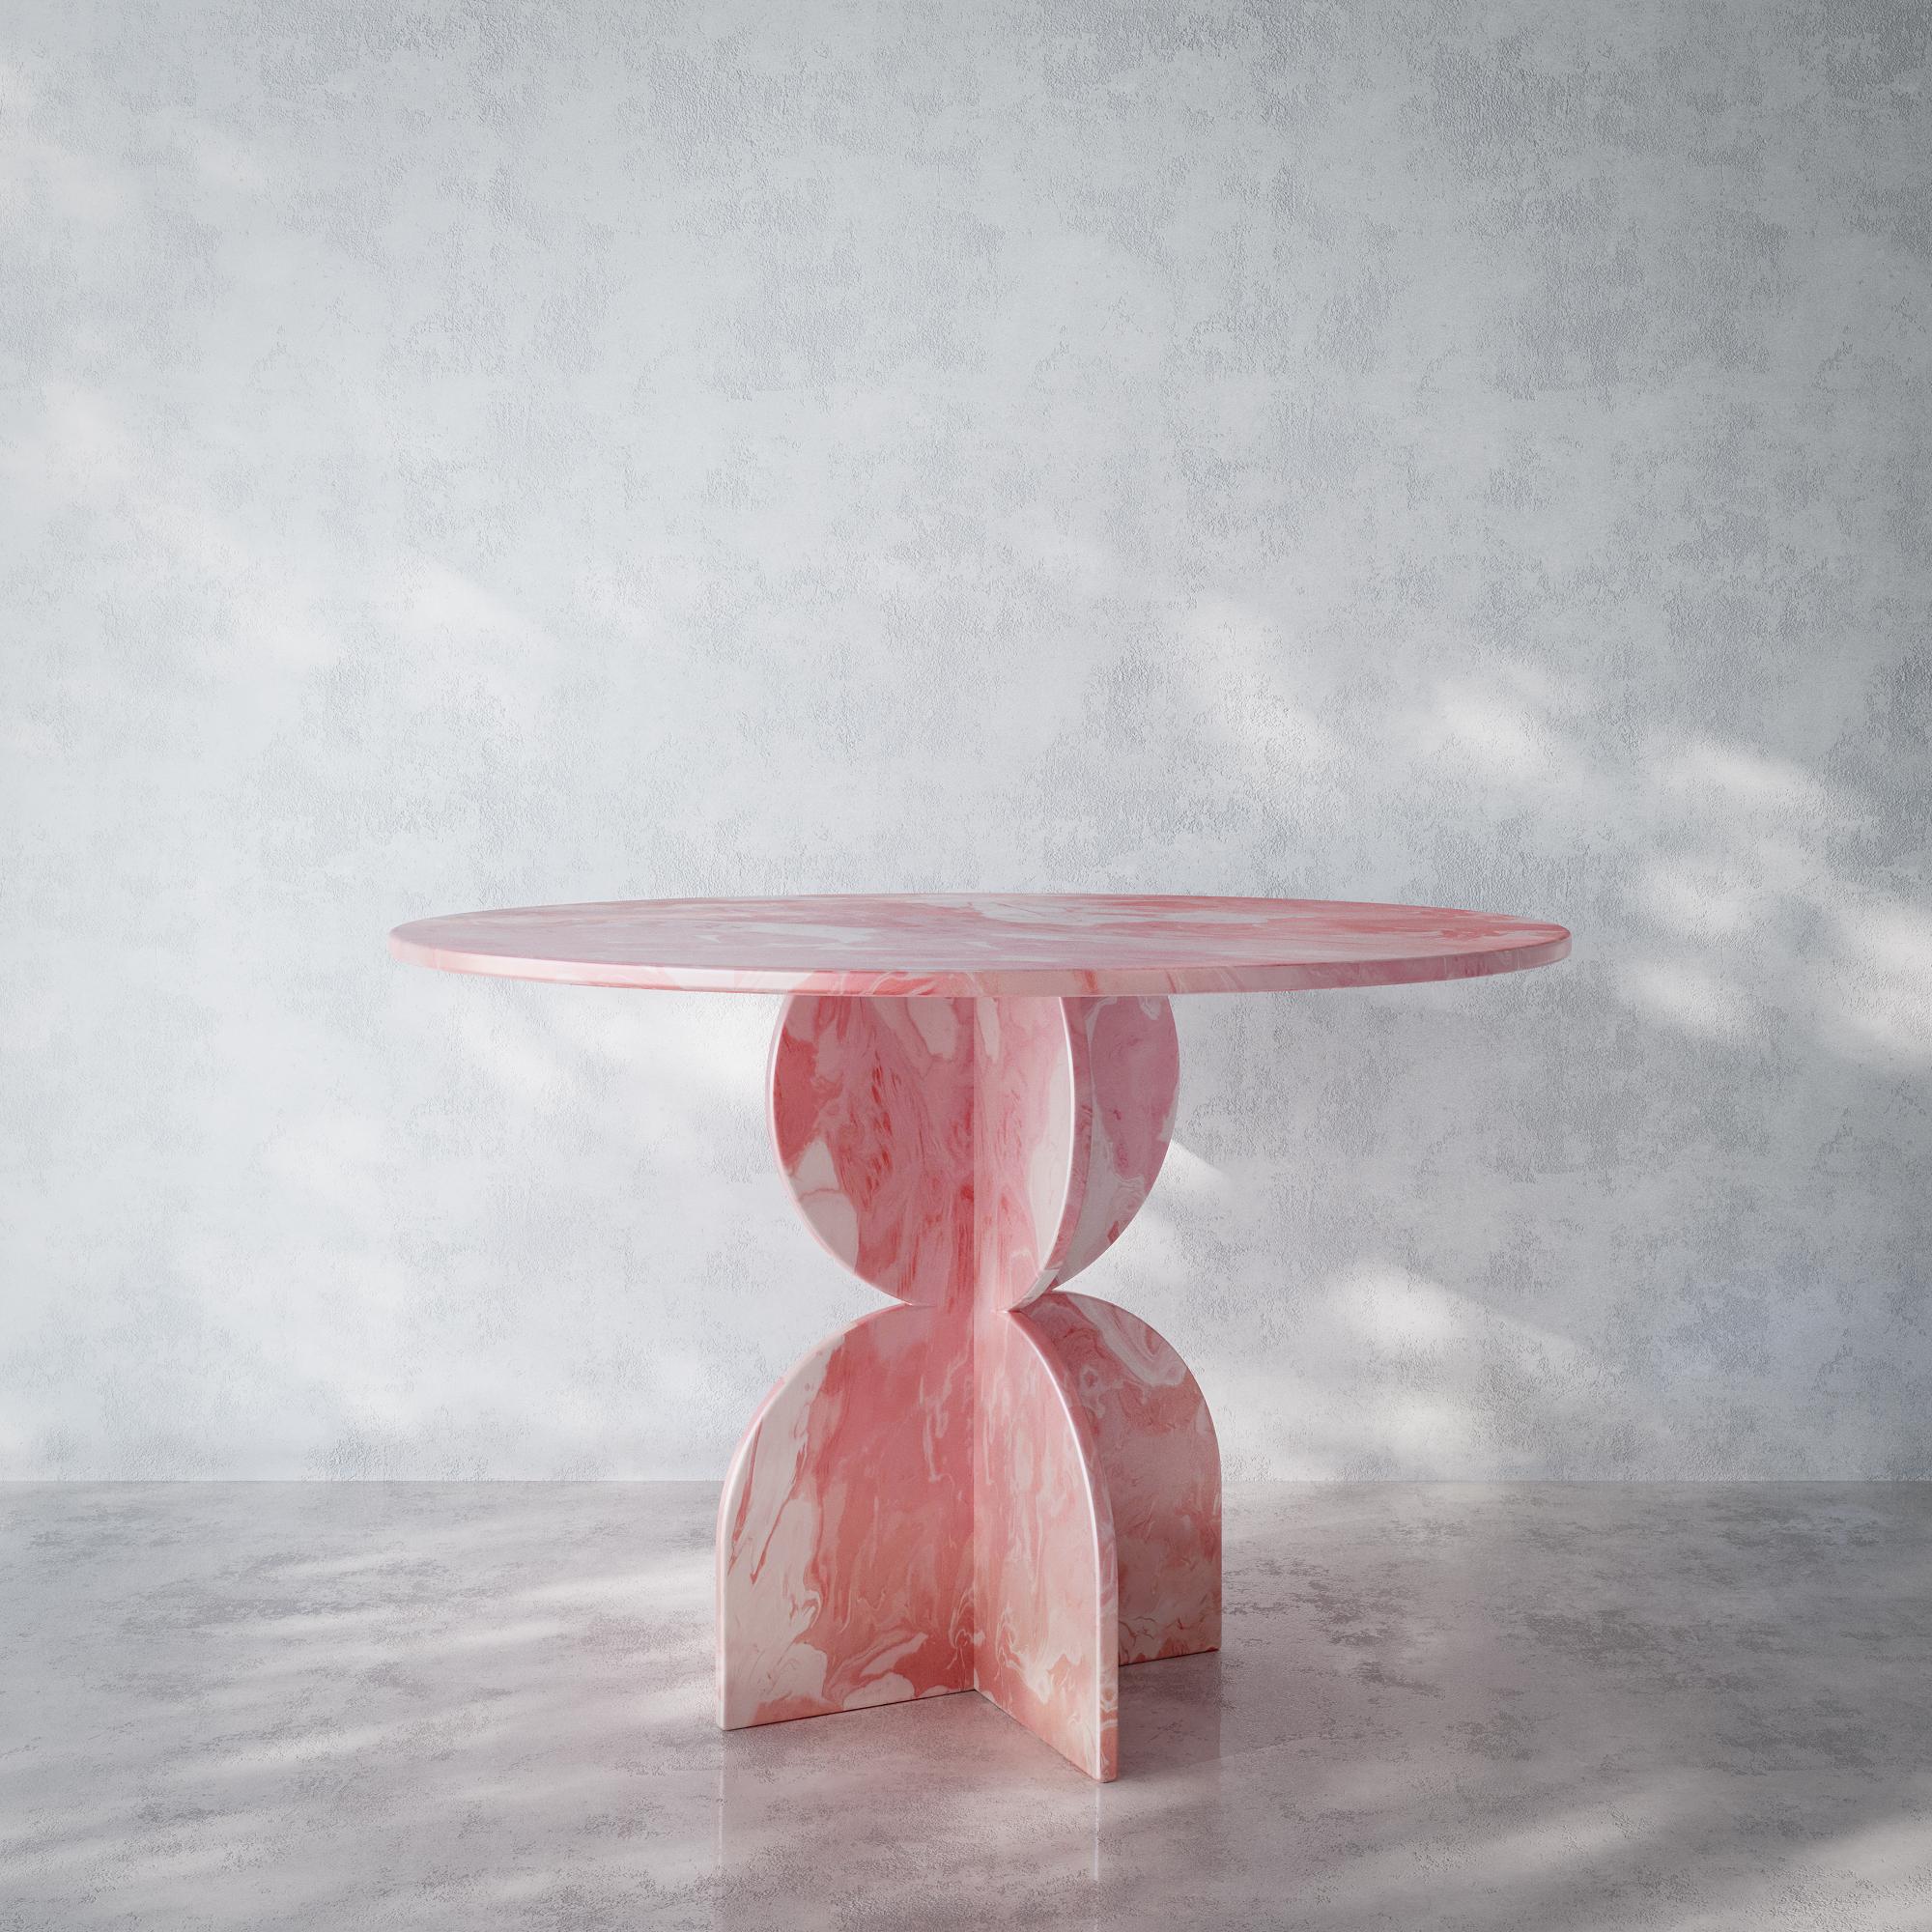 Runder Tisch in Rosa, handgefertigt aus 100% recyceltem Kunststoff von Anqa Studios.
Unglaubliche Gespräche finden an unglaublichen Tischen statt. Der runde Tisch von ANQA Studios ist ein geometrisch geformter Tisch, dessen Design von der